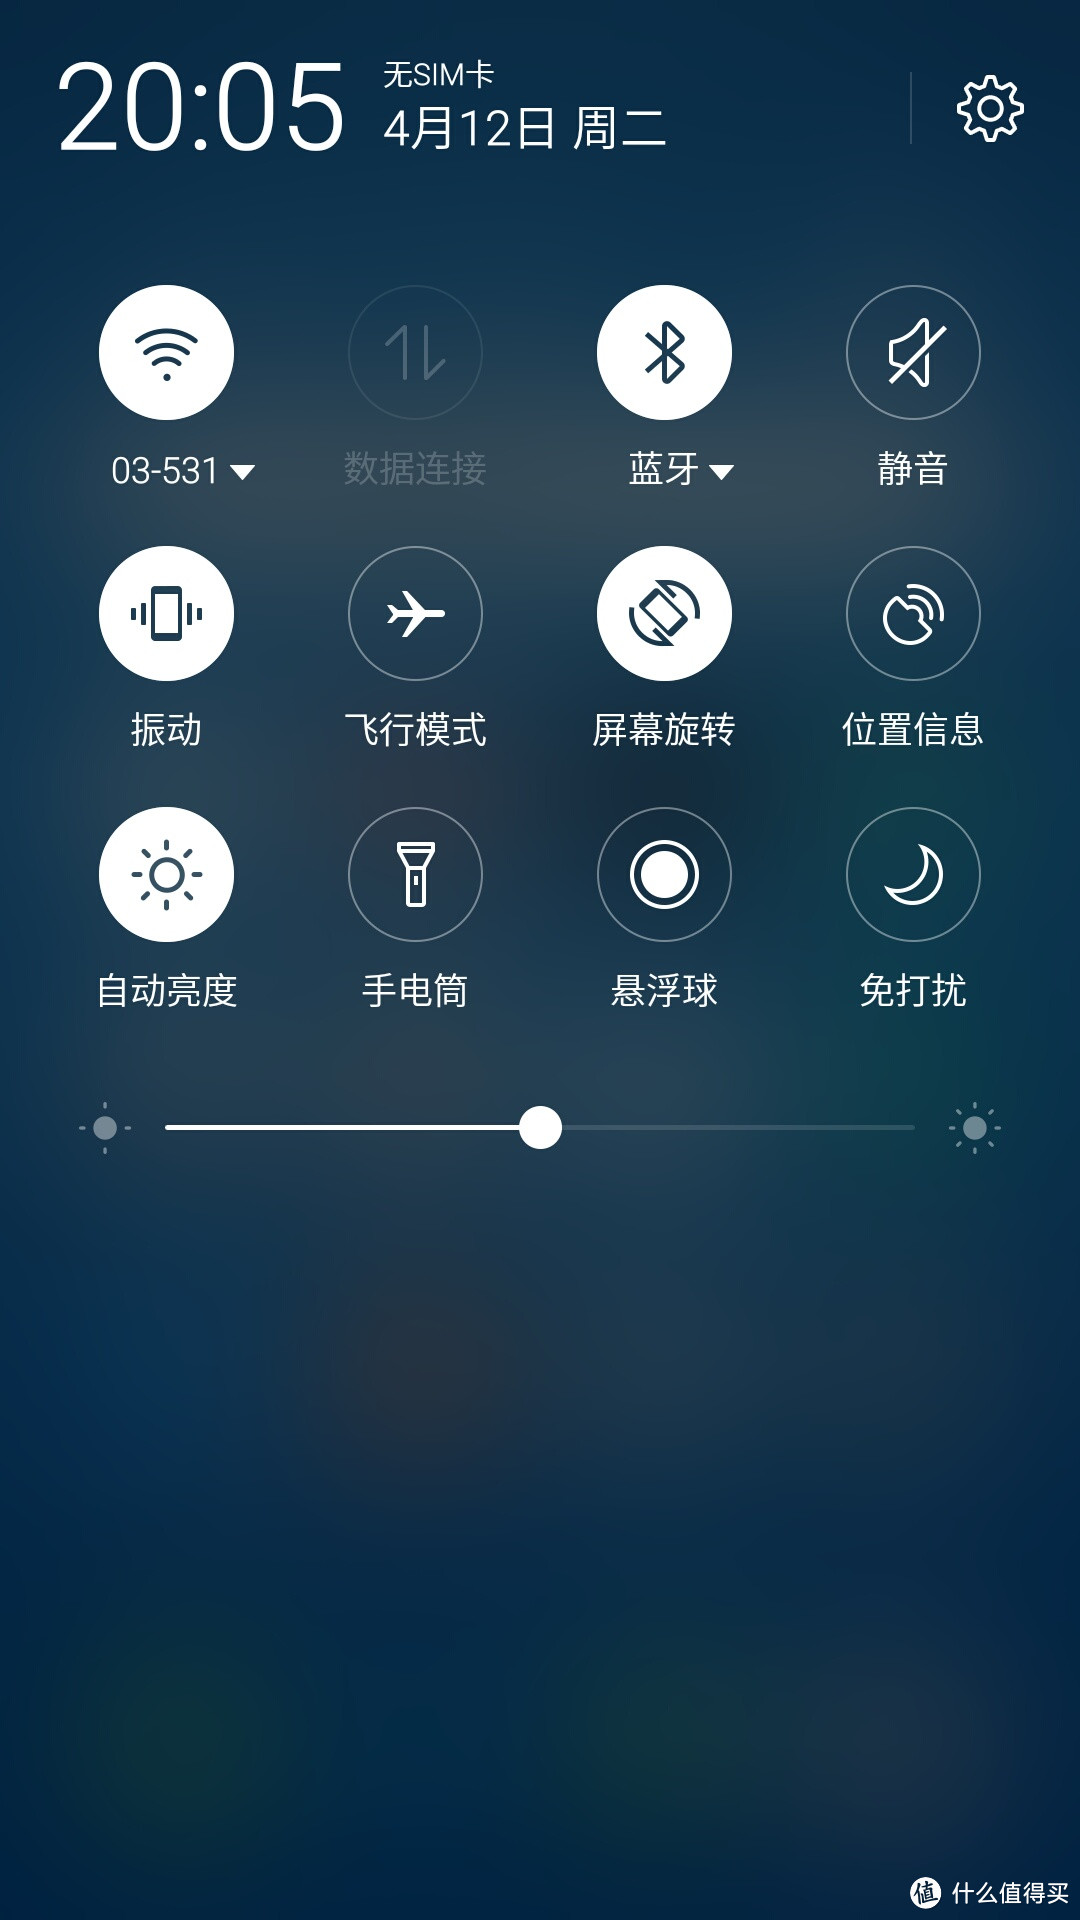 你的备用机该换代了：MEIZU 魅族 魅蓝 Note3 银白色公开版开箱